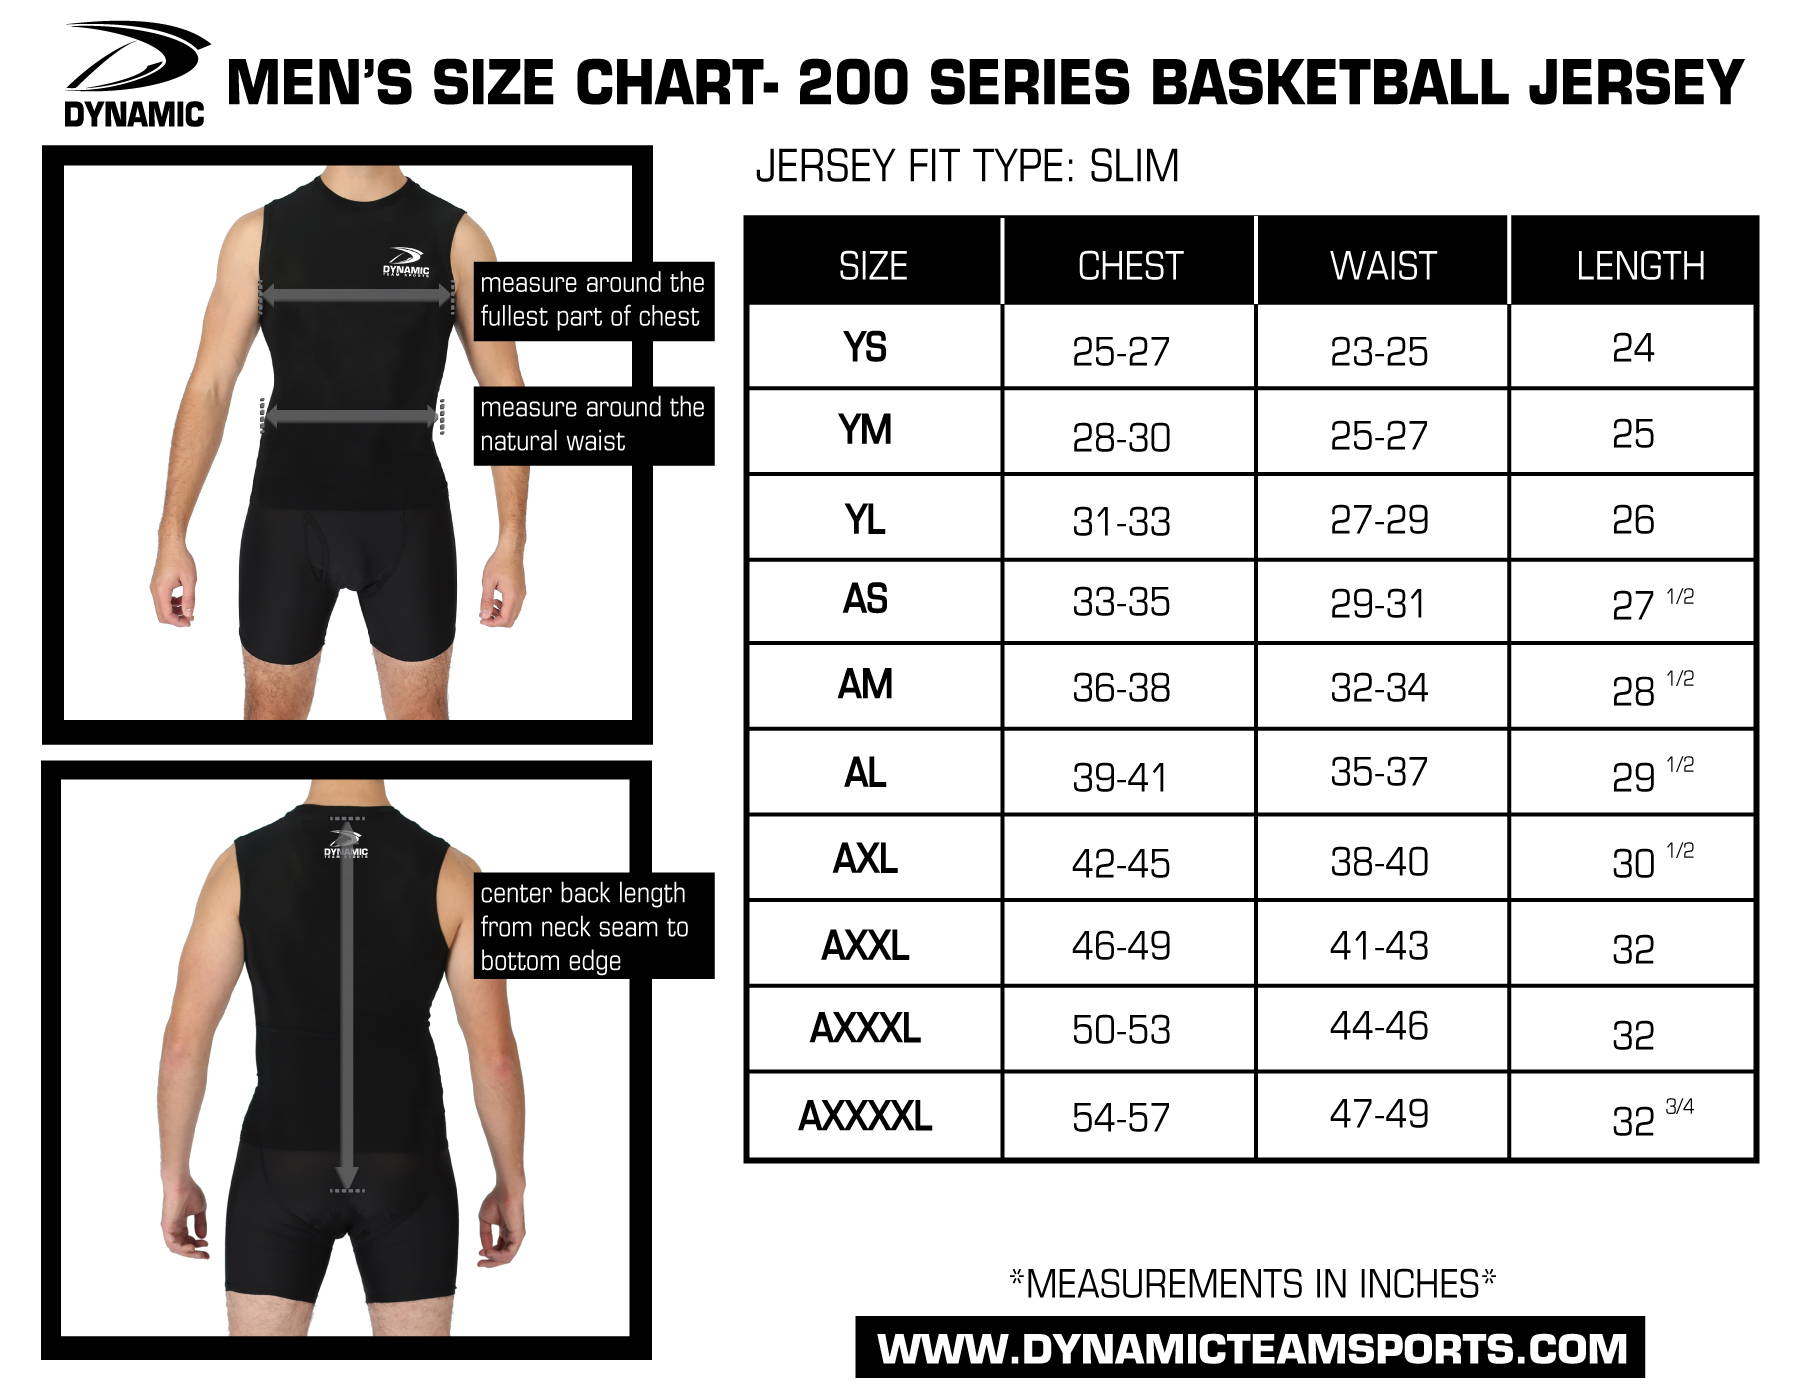 jersey size chart